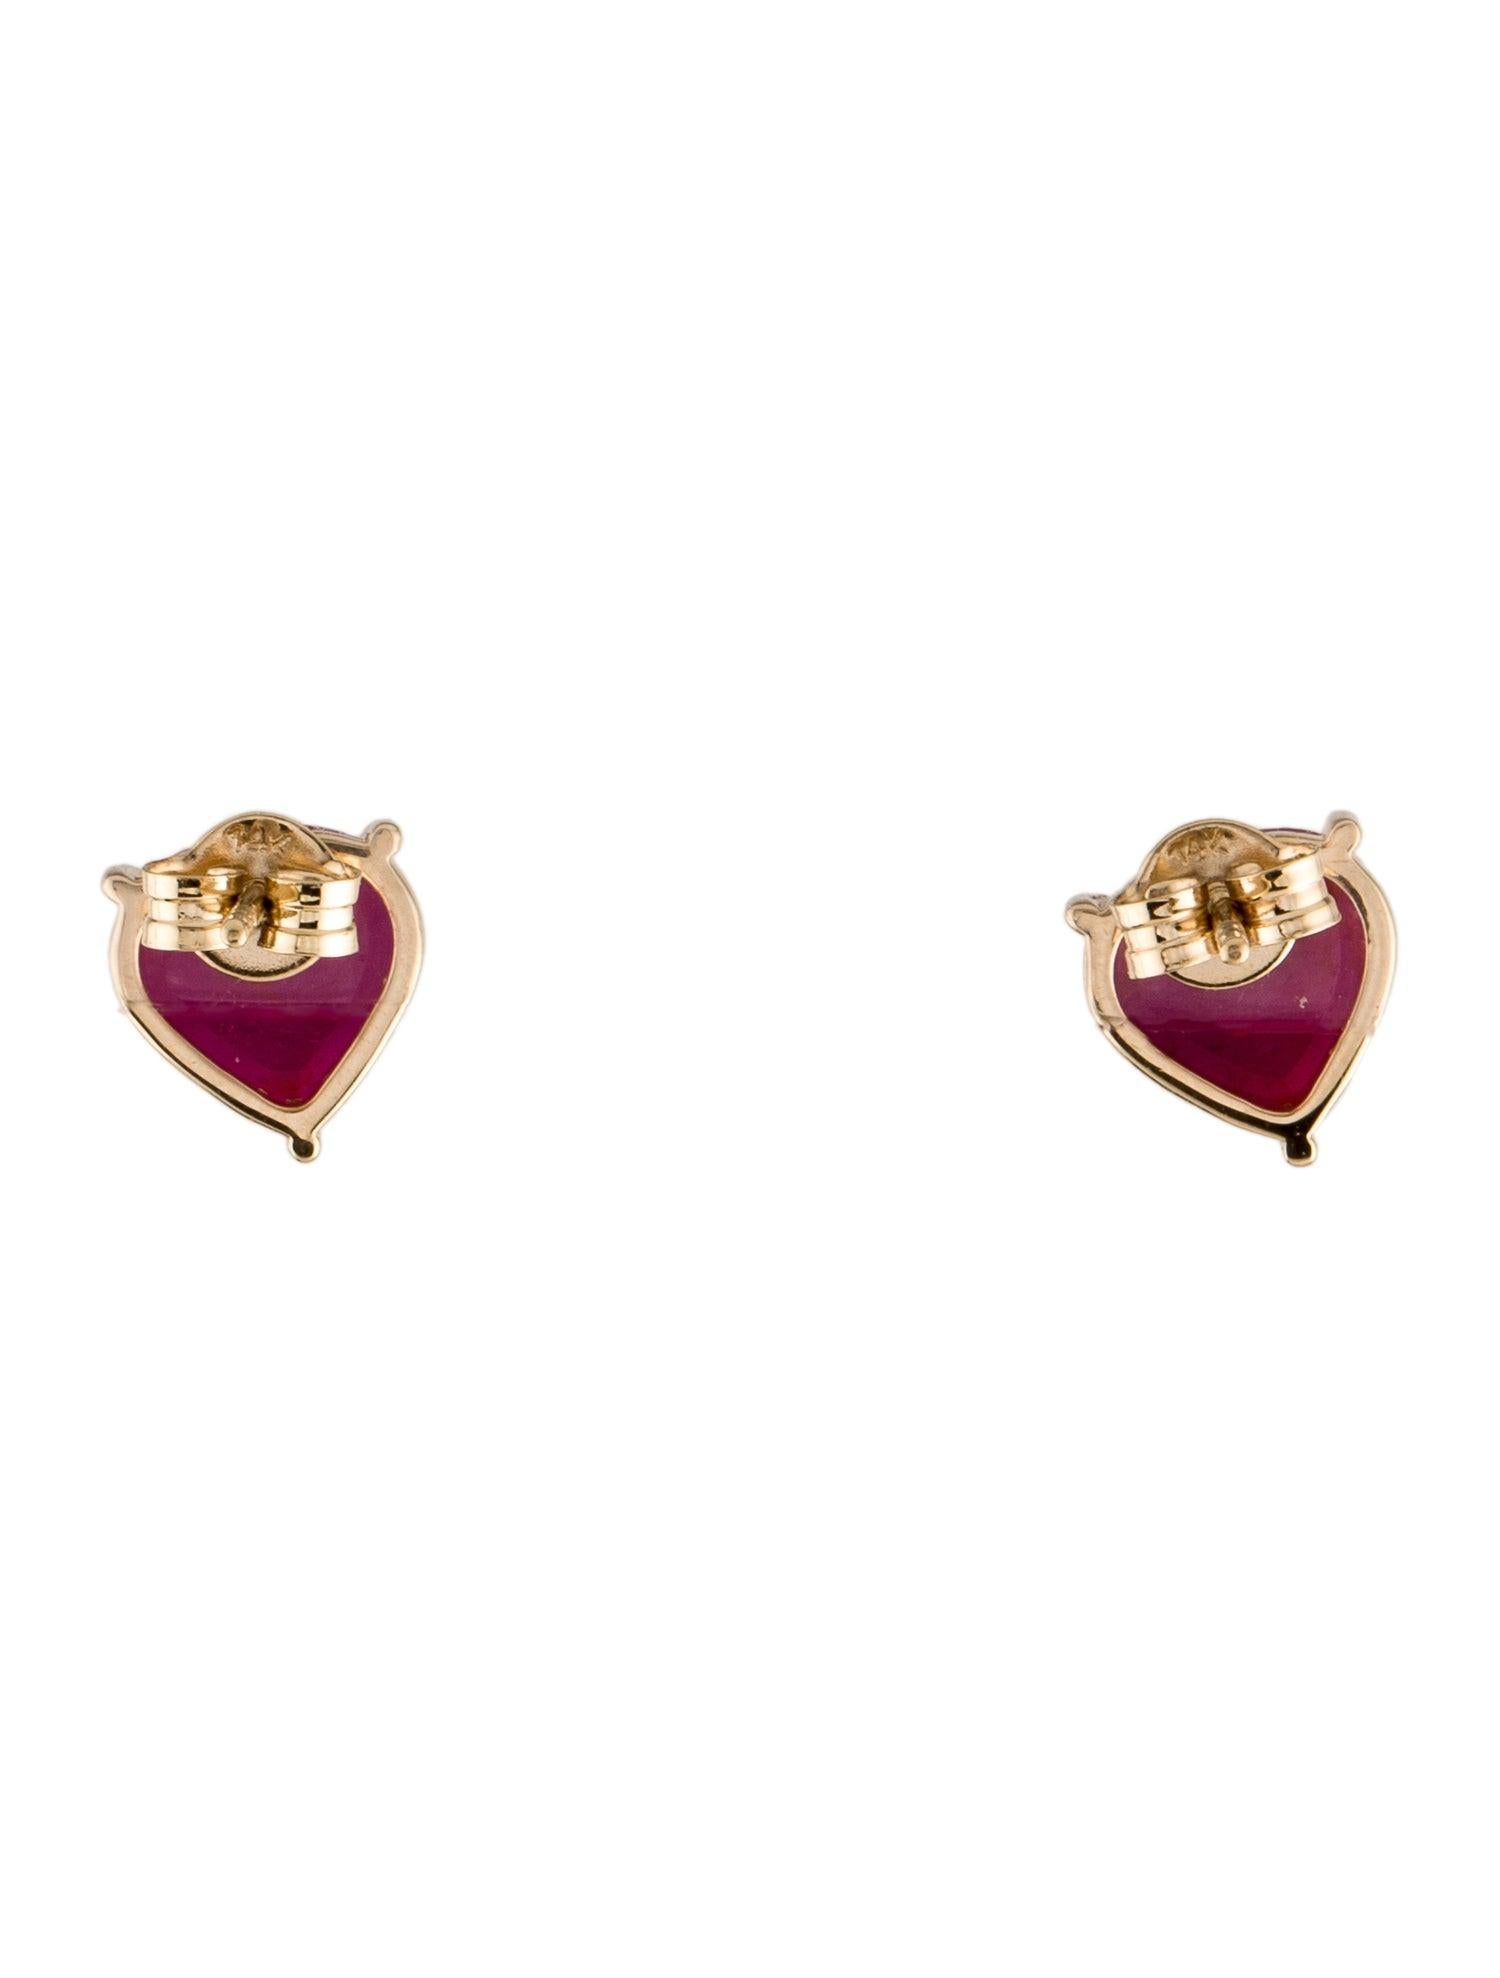 Women's 14K Ruby Stud Earrings - 6.39ctw, Elegant Gemstone Jewelry, Timeless Style For Sale